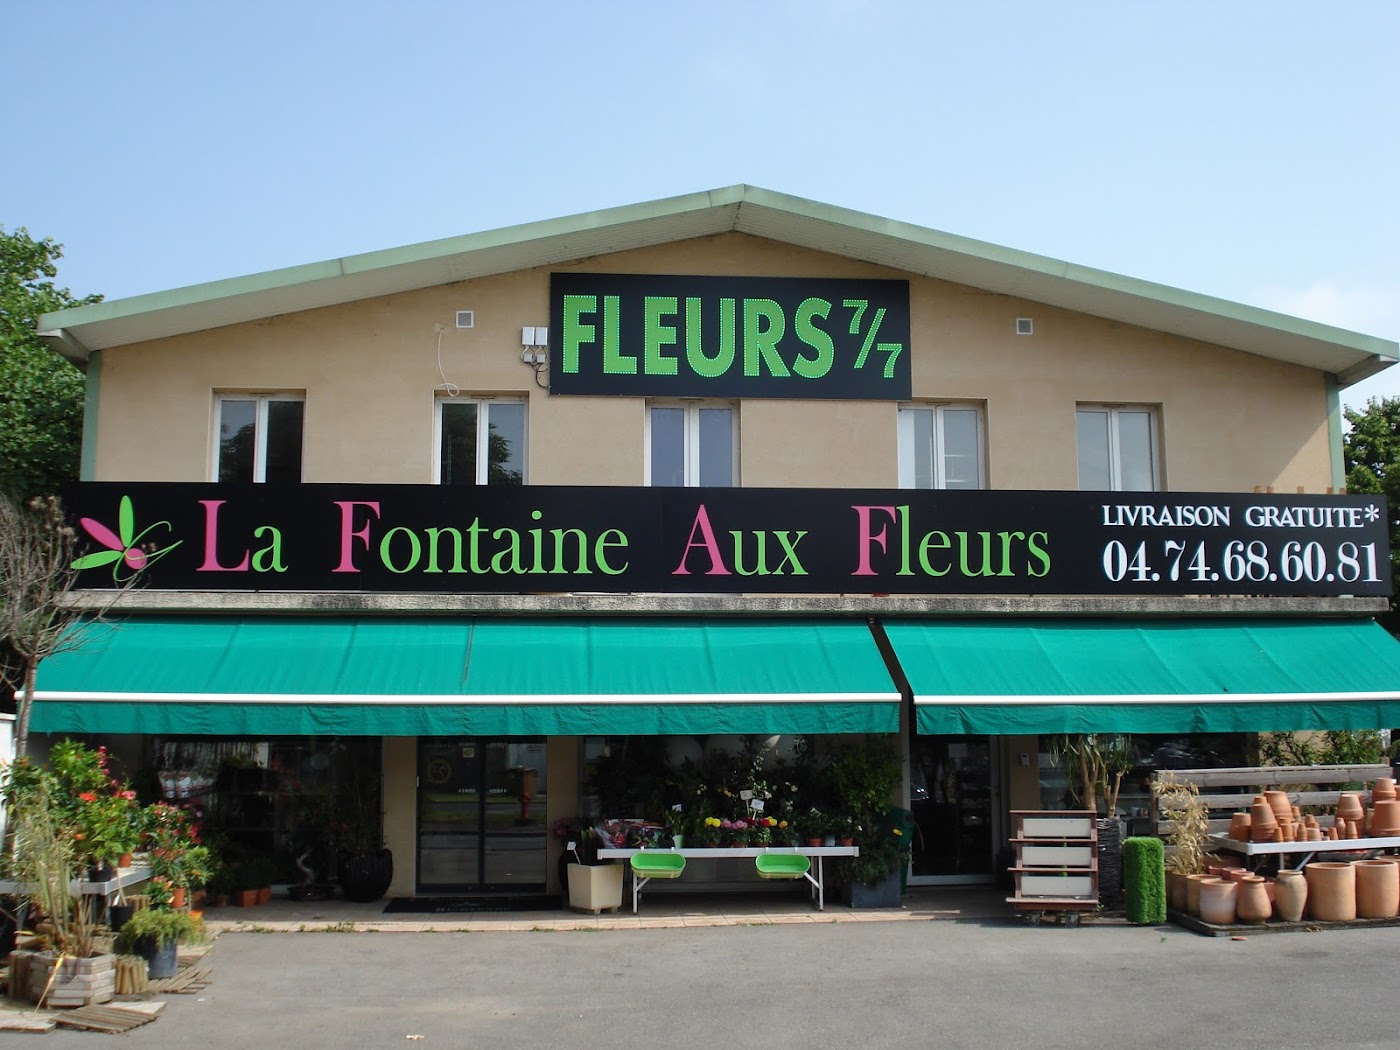 LA FONTAINE AUX FLEURS / ANASTASIA FLEURS